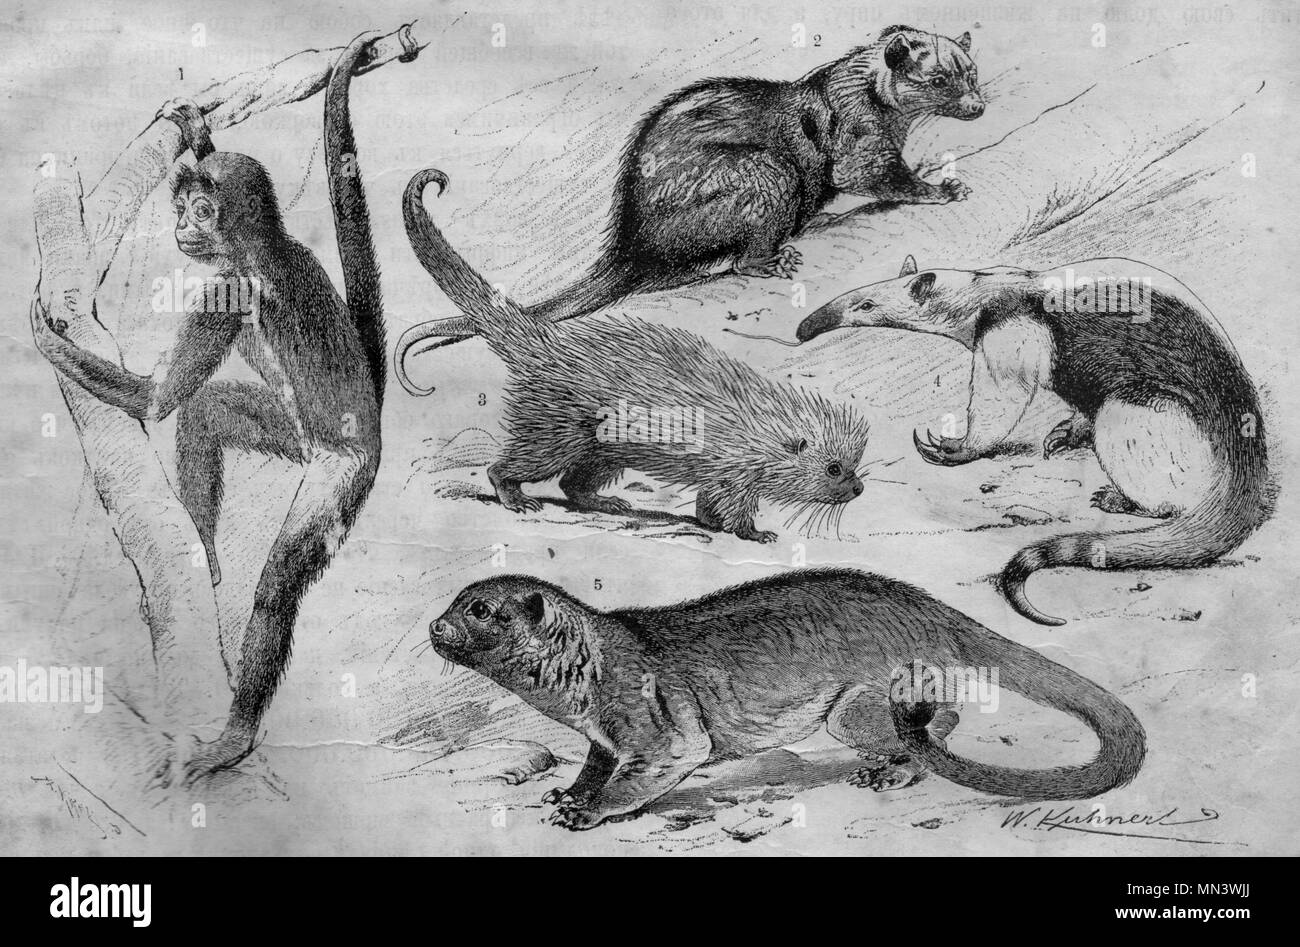 Tanche de l'Amérique du Sud les singes à queue. Vintage illustration. (1900) 1 2 singe 3 Porcupi l'opossum commun brésilien 4 fourmilier à collier 5 Kinkajou Banque D'Images